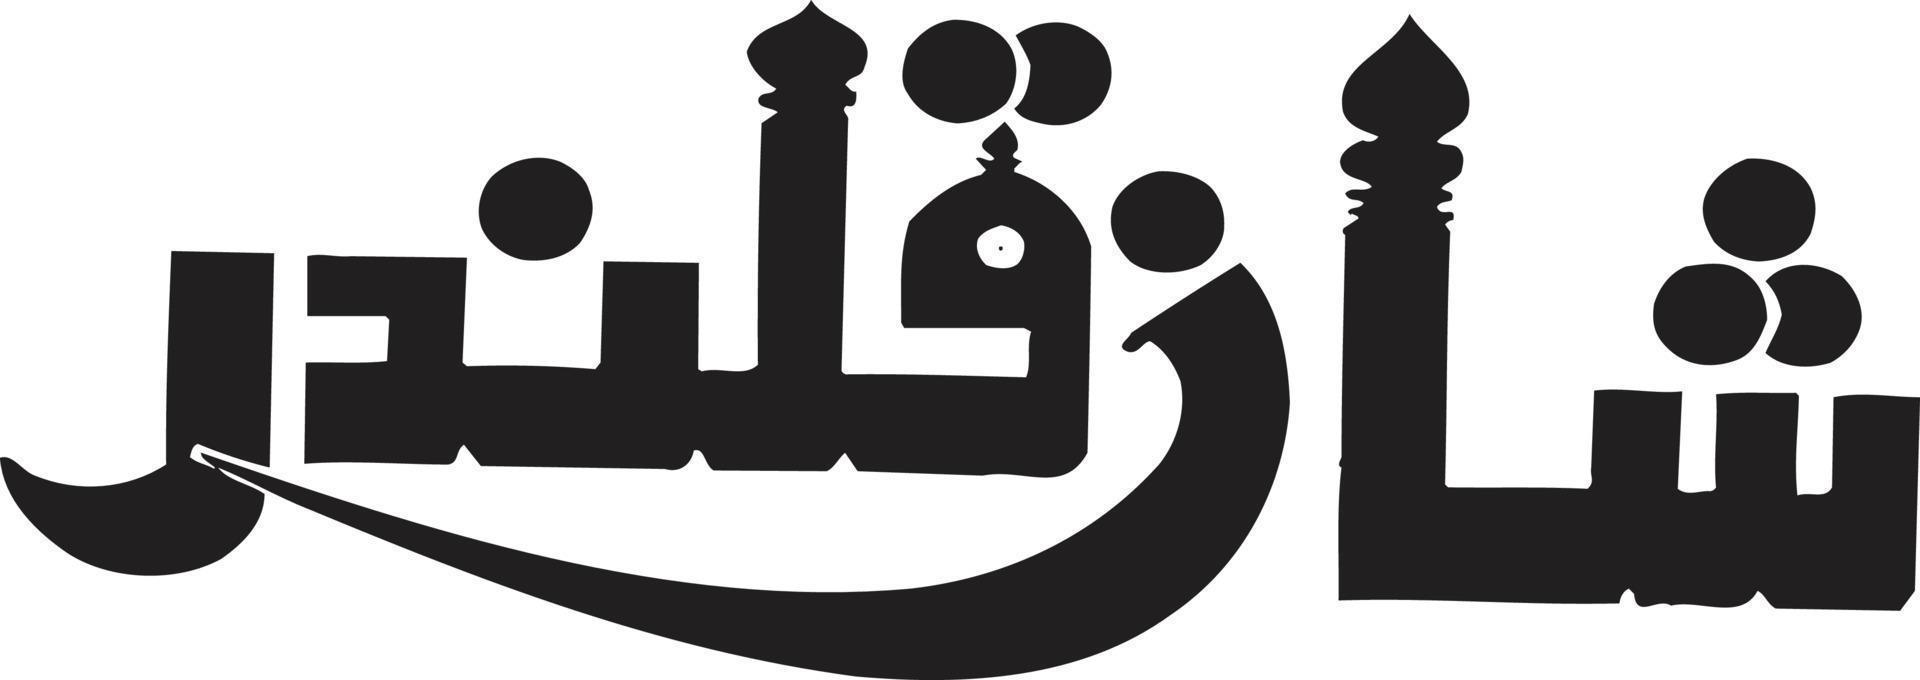 Sahan kwijl Islamitisch Arabisch schoonschrift vrij vector